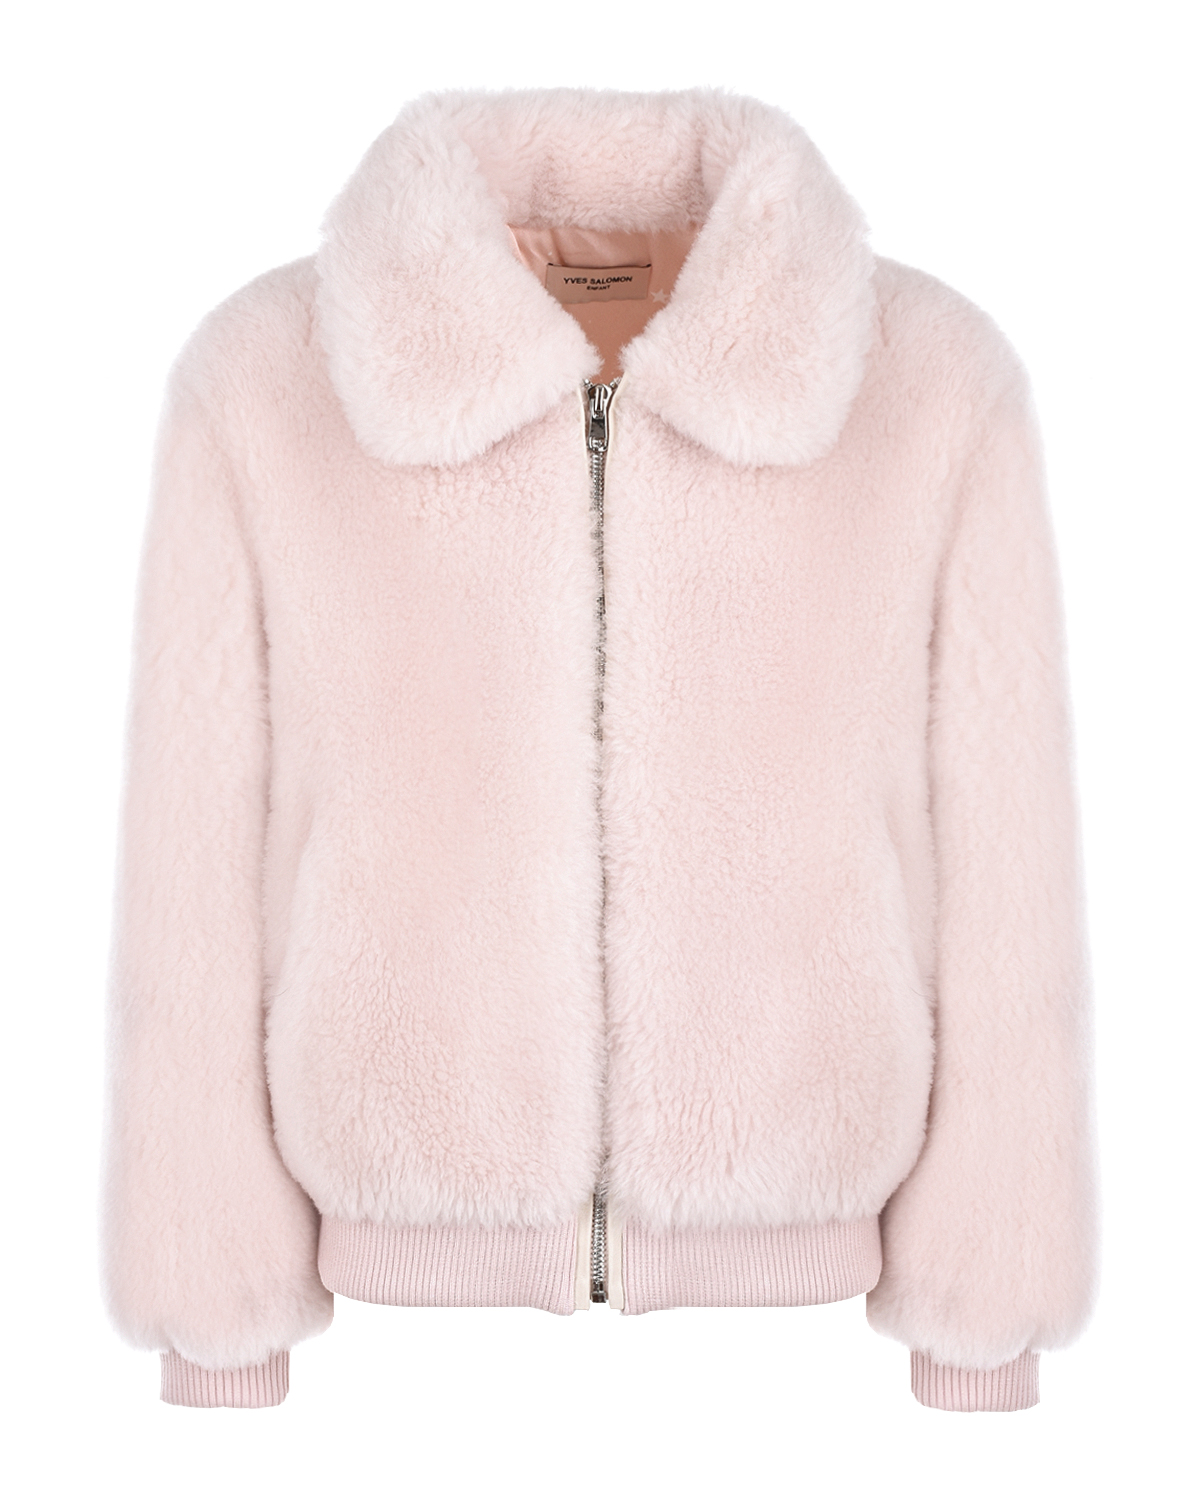 Купить Розовая куртка из эко-меха Yves Salomon детская, Белый, 100%шерсть, 100%полиэстер